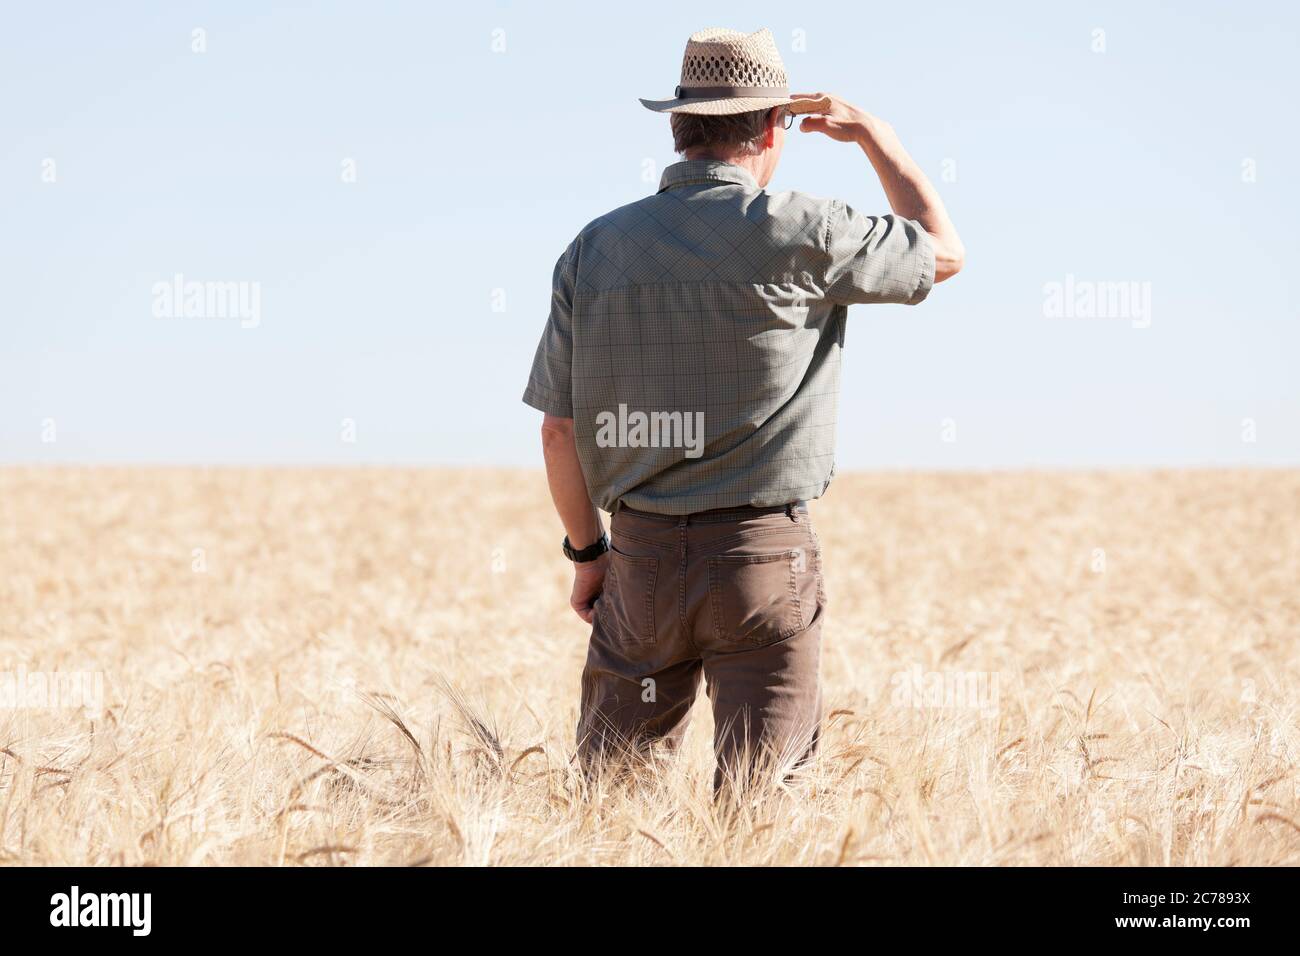 Landwirt in einem trockenen Feld der Ernte, weil die globale Erwärmung auf der Suche nach Regen - selektive Fokus auf den Landwirt Stockfoto